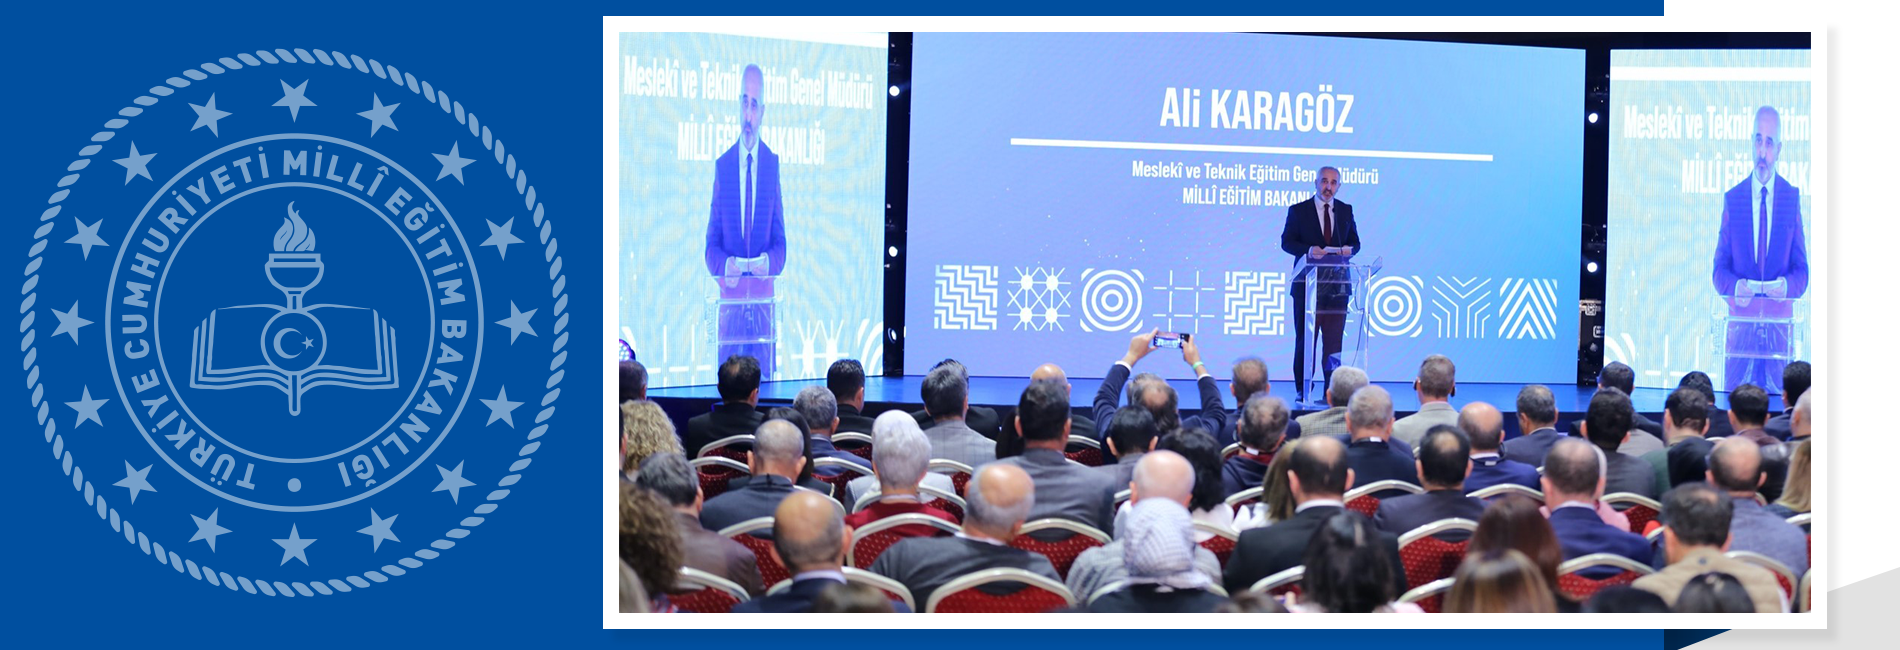 Meslekî Eğitim Forumu Antalya'da Düzenlendi